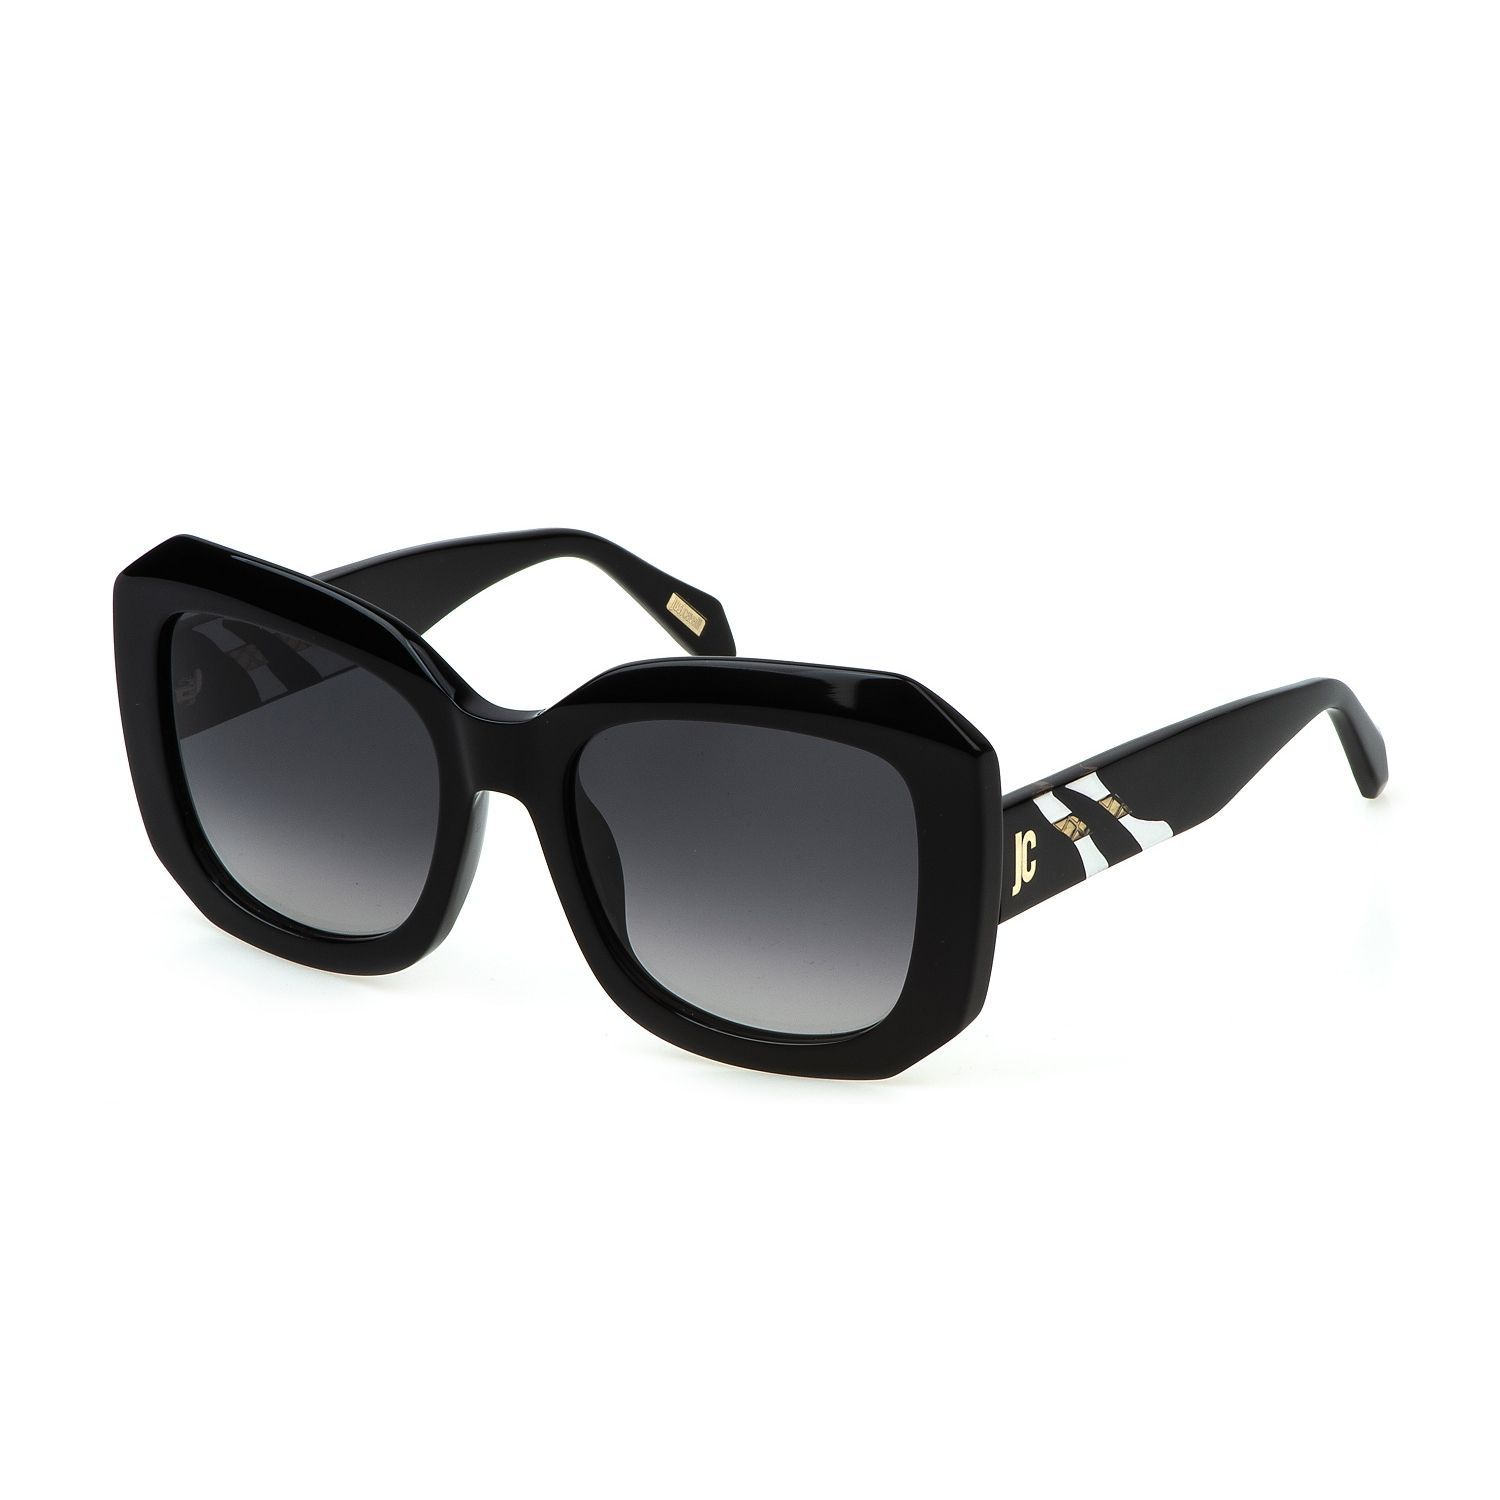 SJC085V Square Sunglasses 0700 - size 54